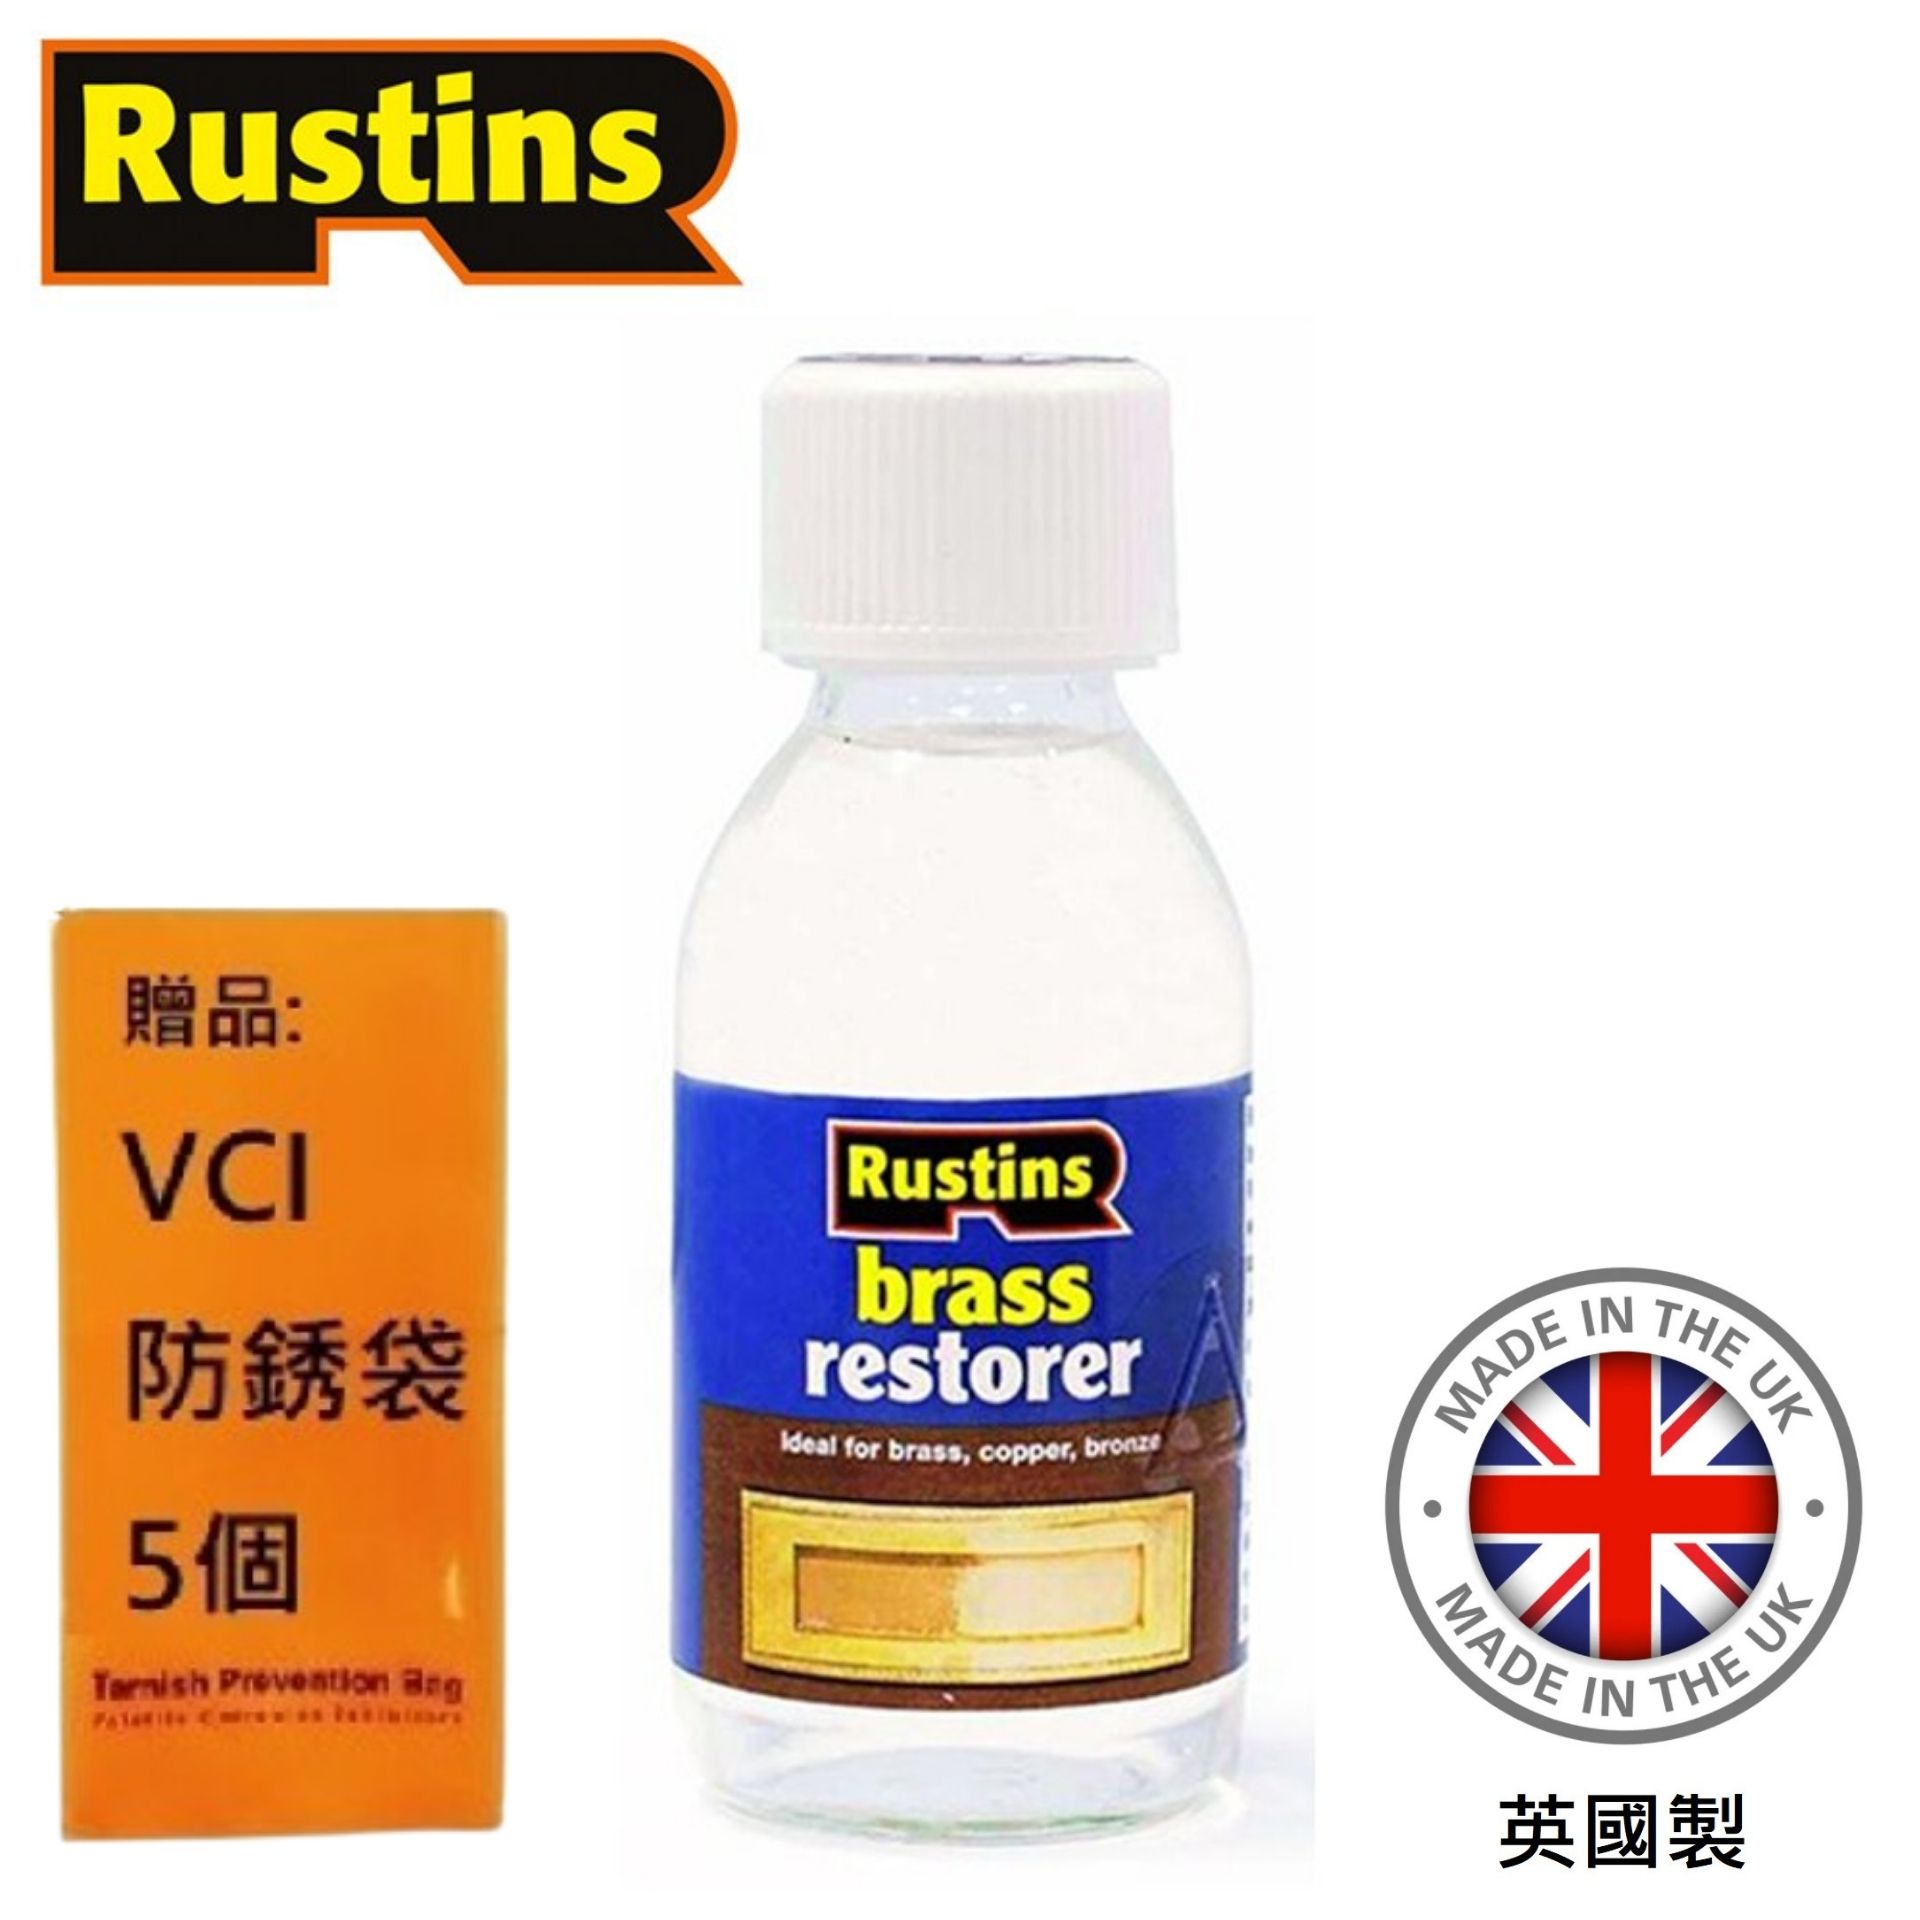 【英國Rustins】銅製品清潔還原劑 125ml 恢復原始顏色的理想選擇